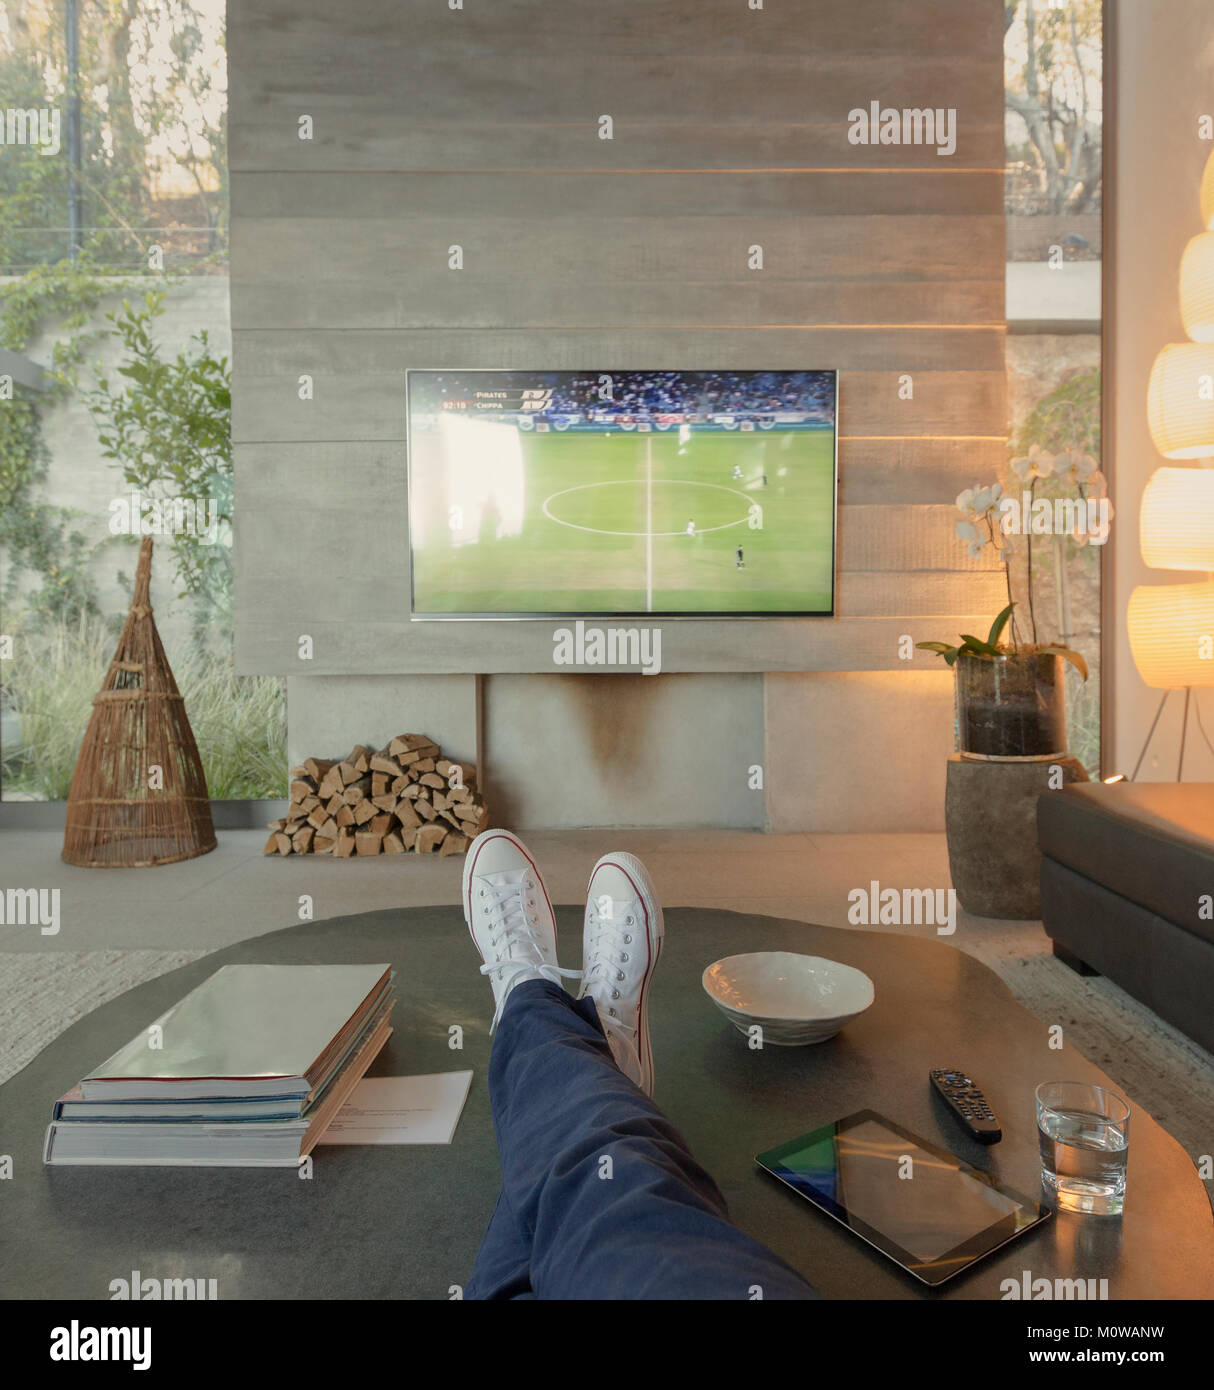 Point de vue personnel femme de regarder le football à la télévision dans la salle de séjour Banque D'Images